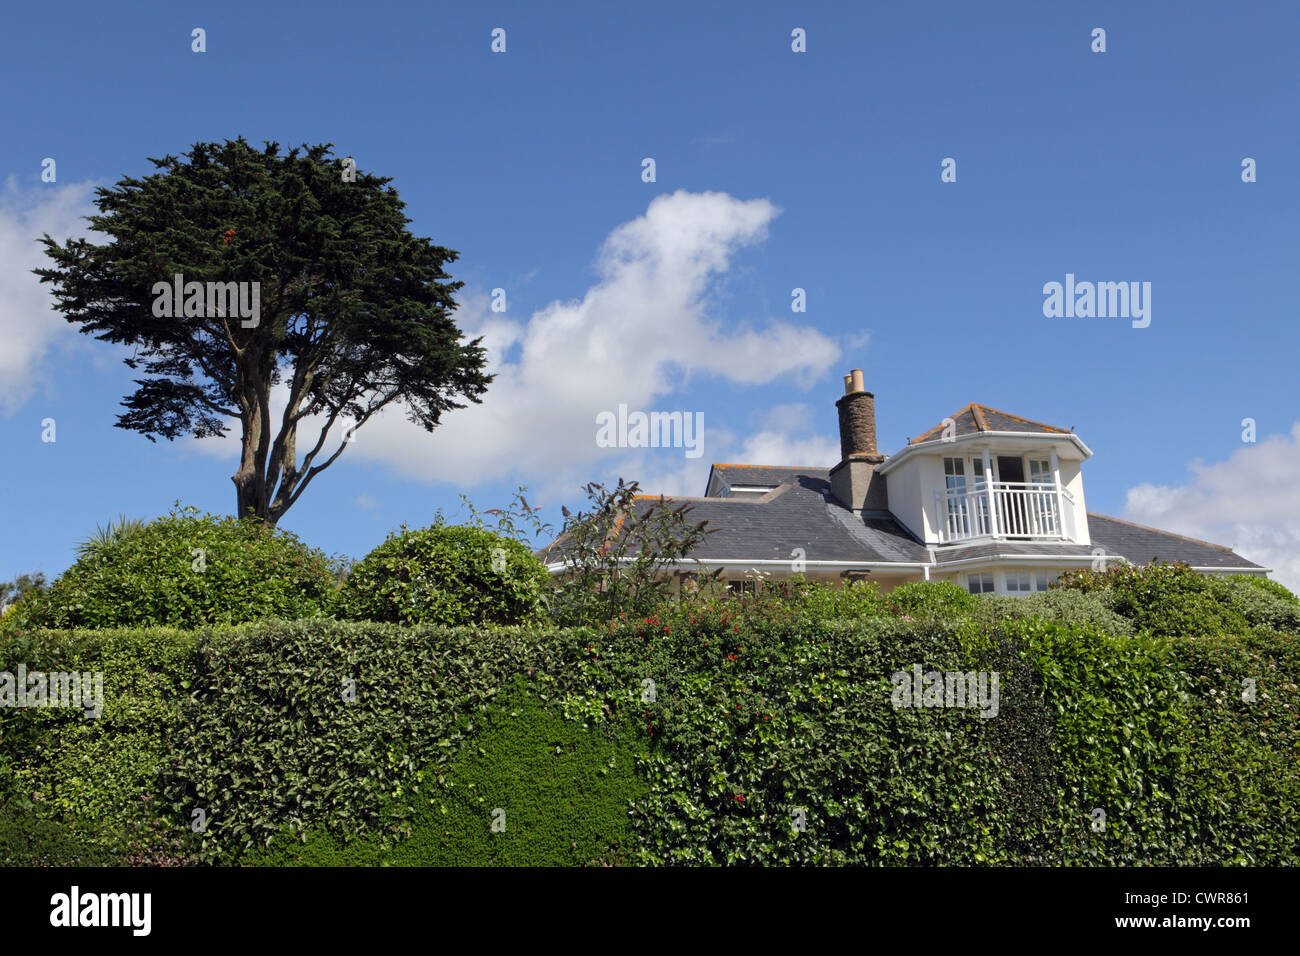 UK Gehäuse Lager außen sonnigen blauen Himmel, Stil Kunst und Kunsthandwerk Haus durch hohe Hecke verdeckt. Datenschutz. Cornwall, UK Stockfoto